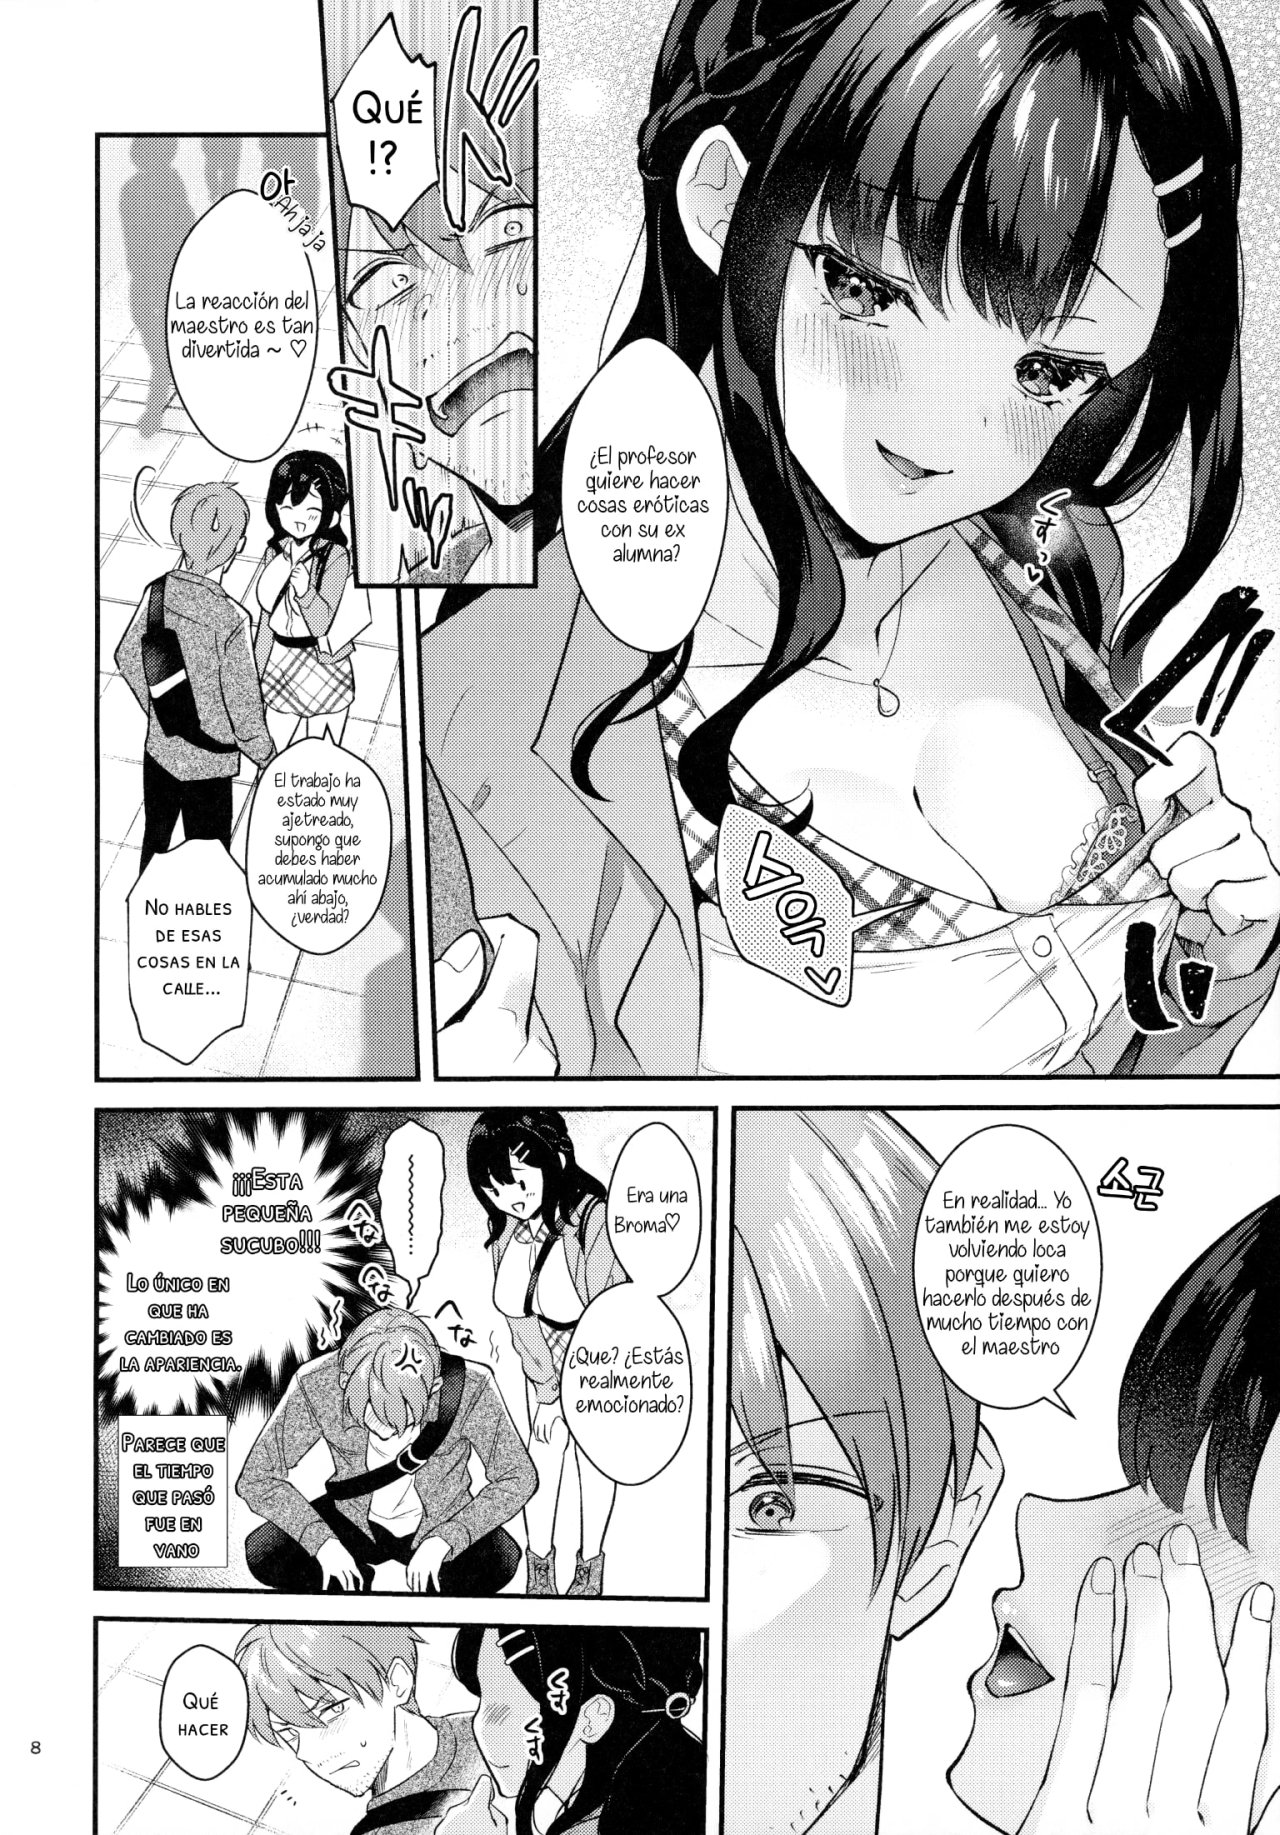 Sunshower-JK Miyako no Valentine Manga 3 - 6